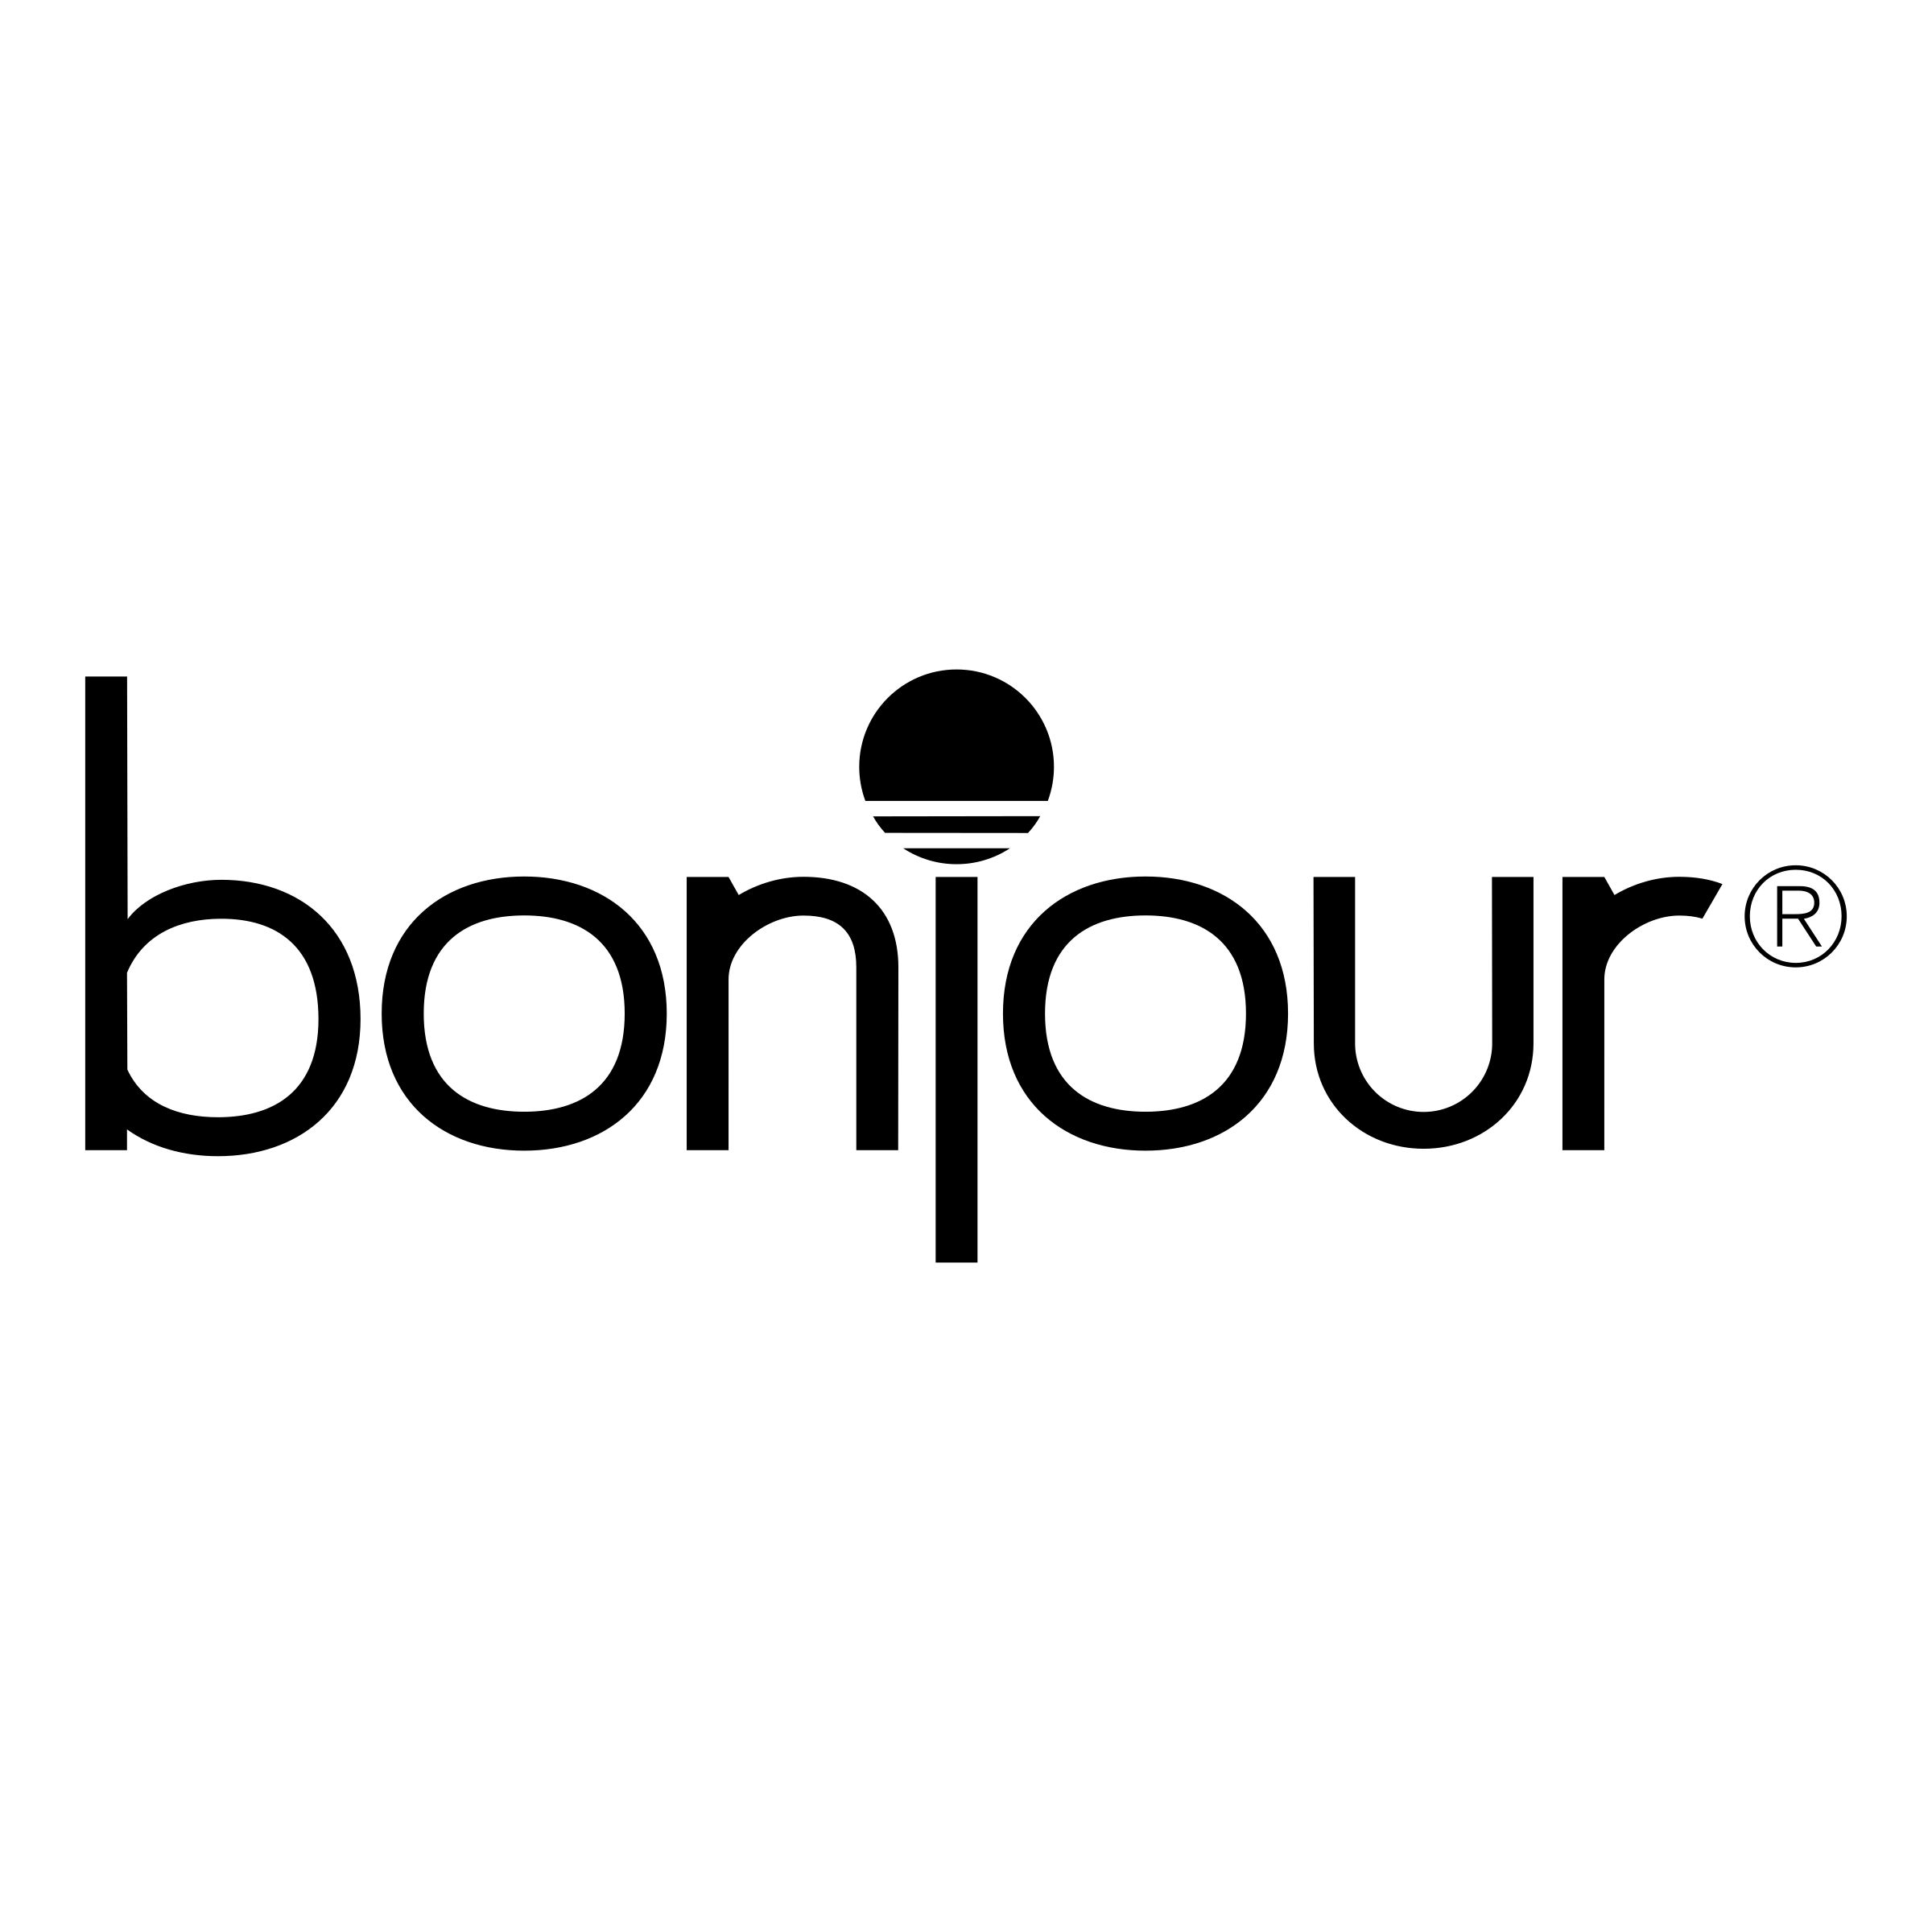 Bonjour Logo - Bonjour 01 Logo PNG Transparent & SVG Vector